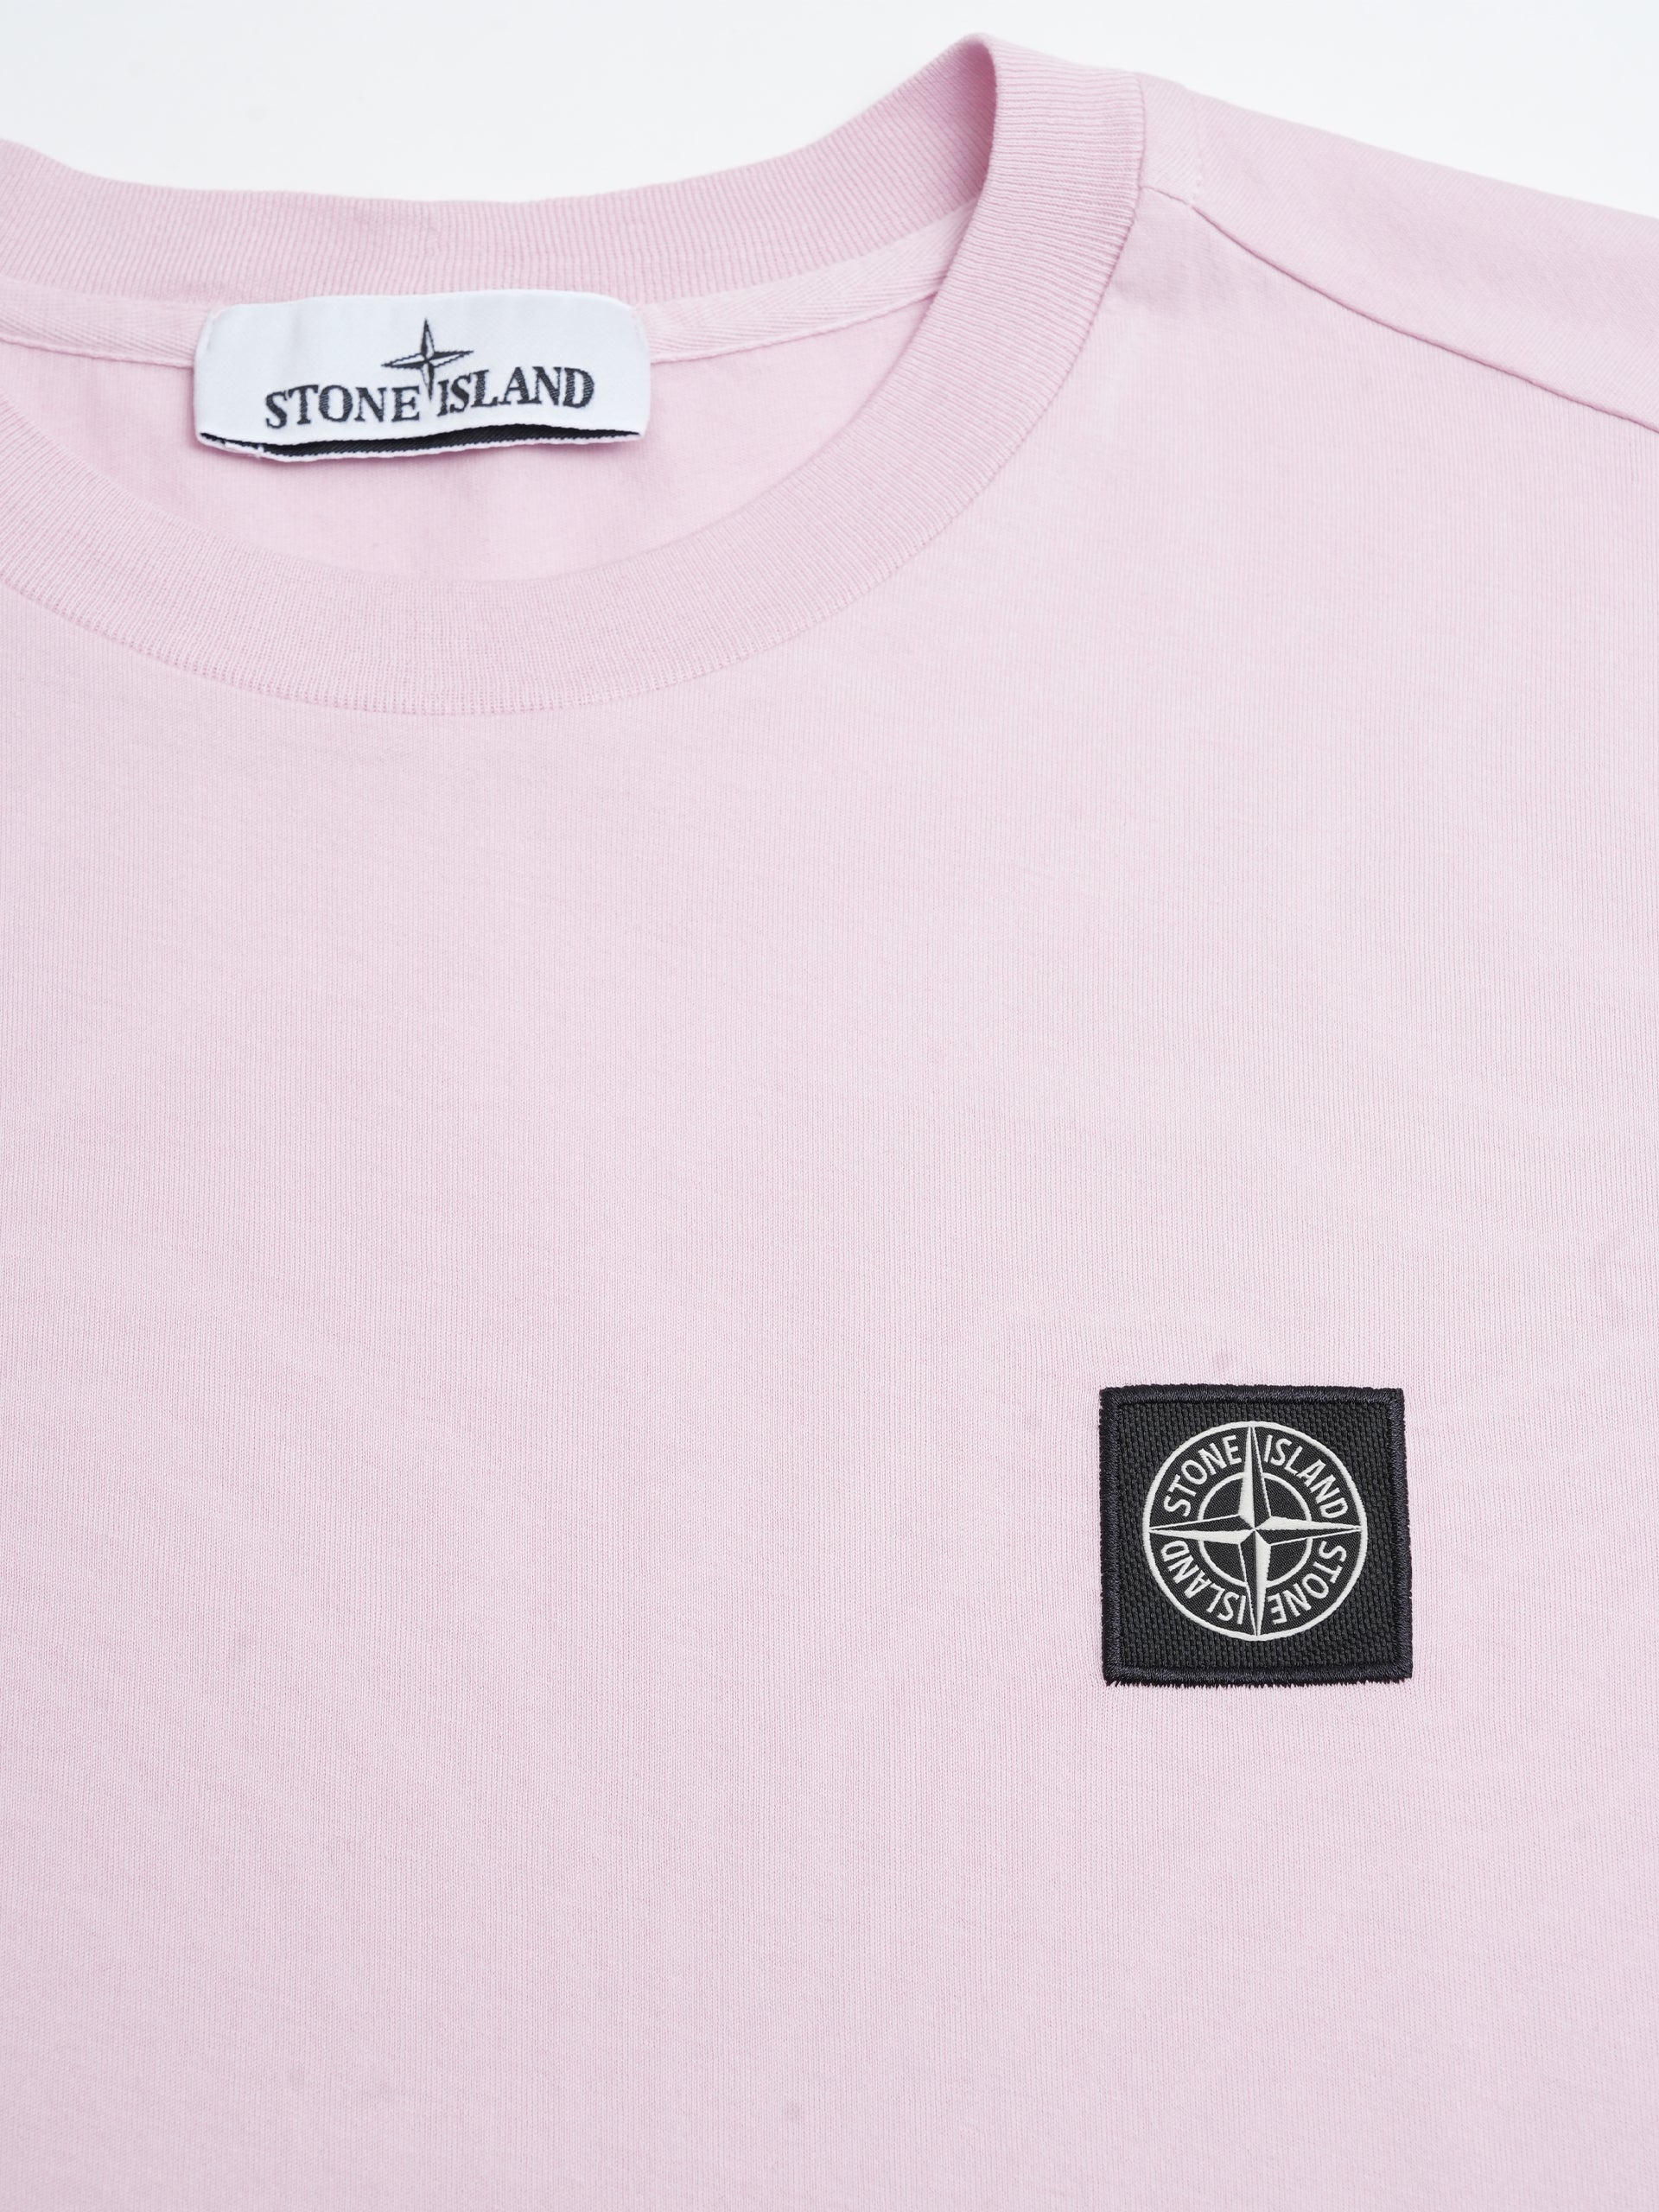 STONE ISLAND - T-Shirt mit Kompass-Patch Rosa – Pink